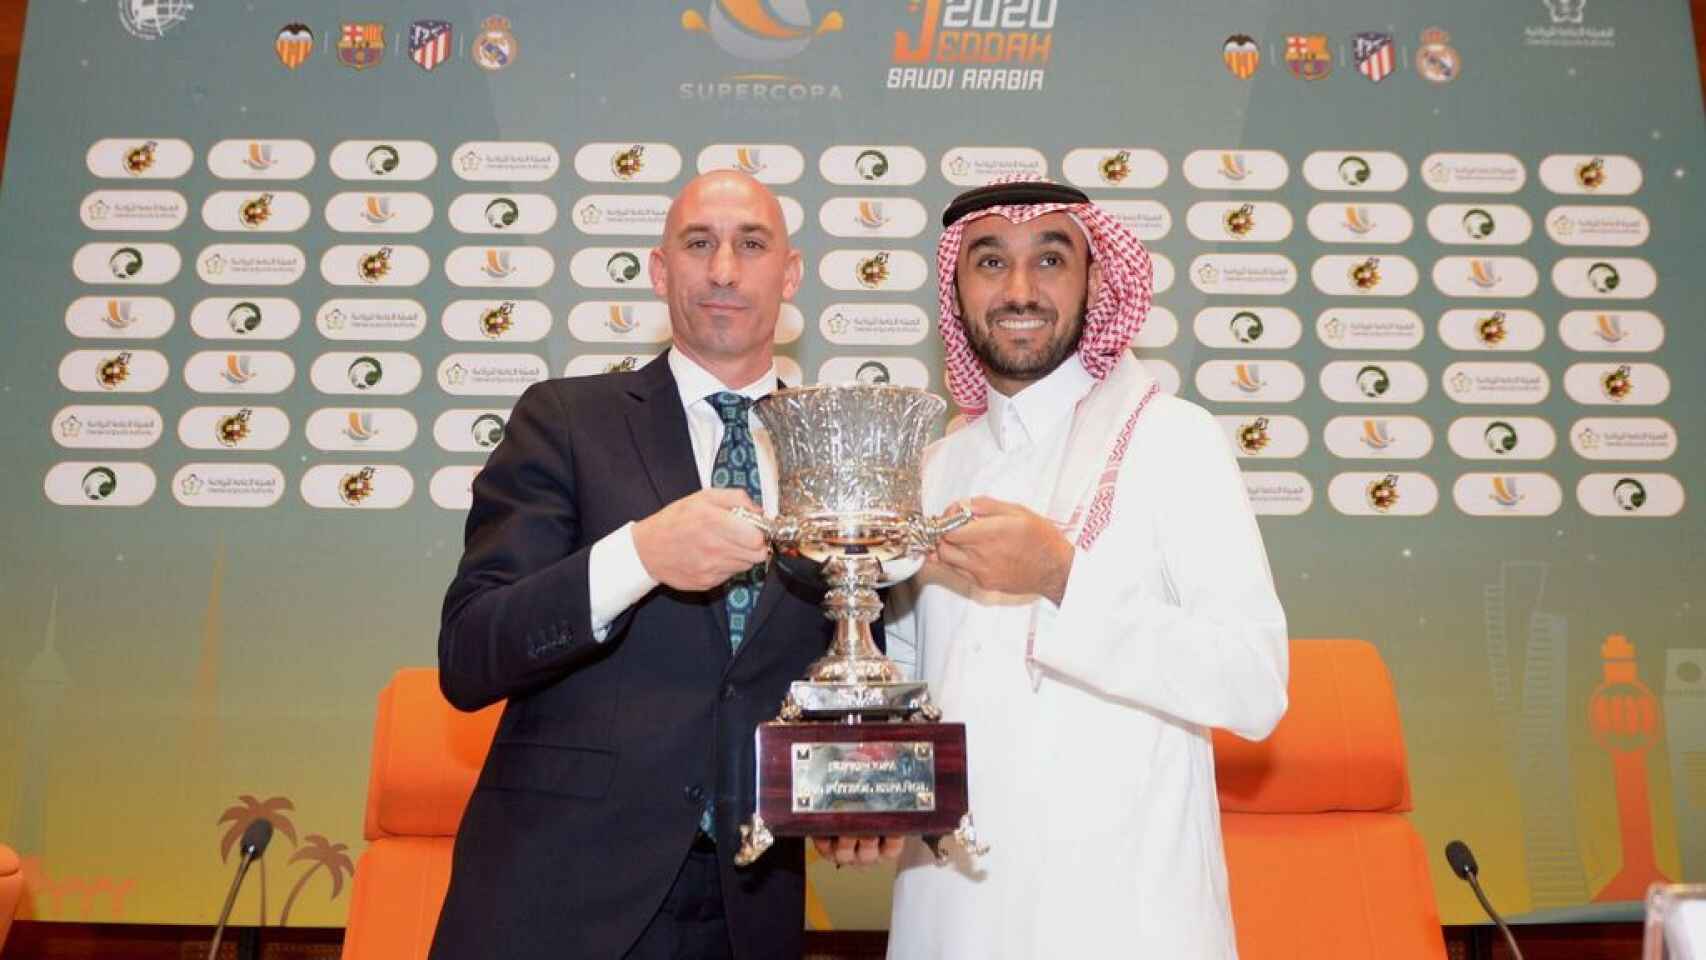 Luis Rubiales presentando la Supercopa de España en Arabia Saudí